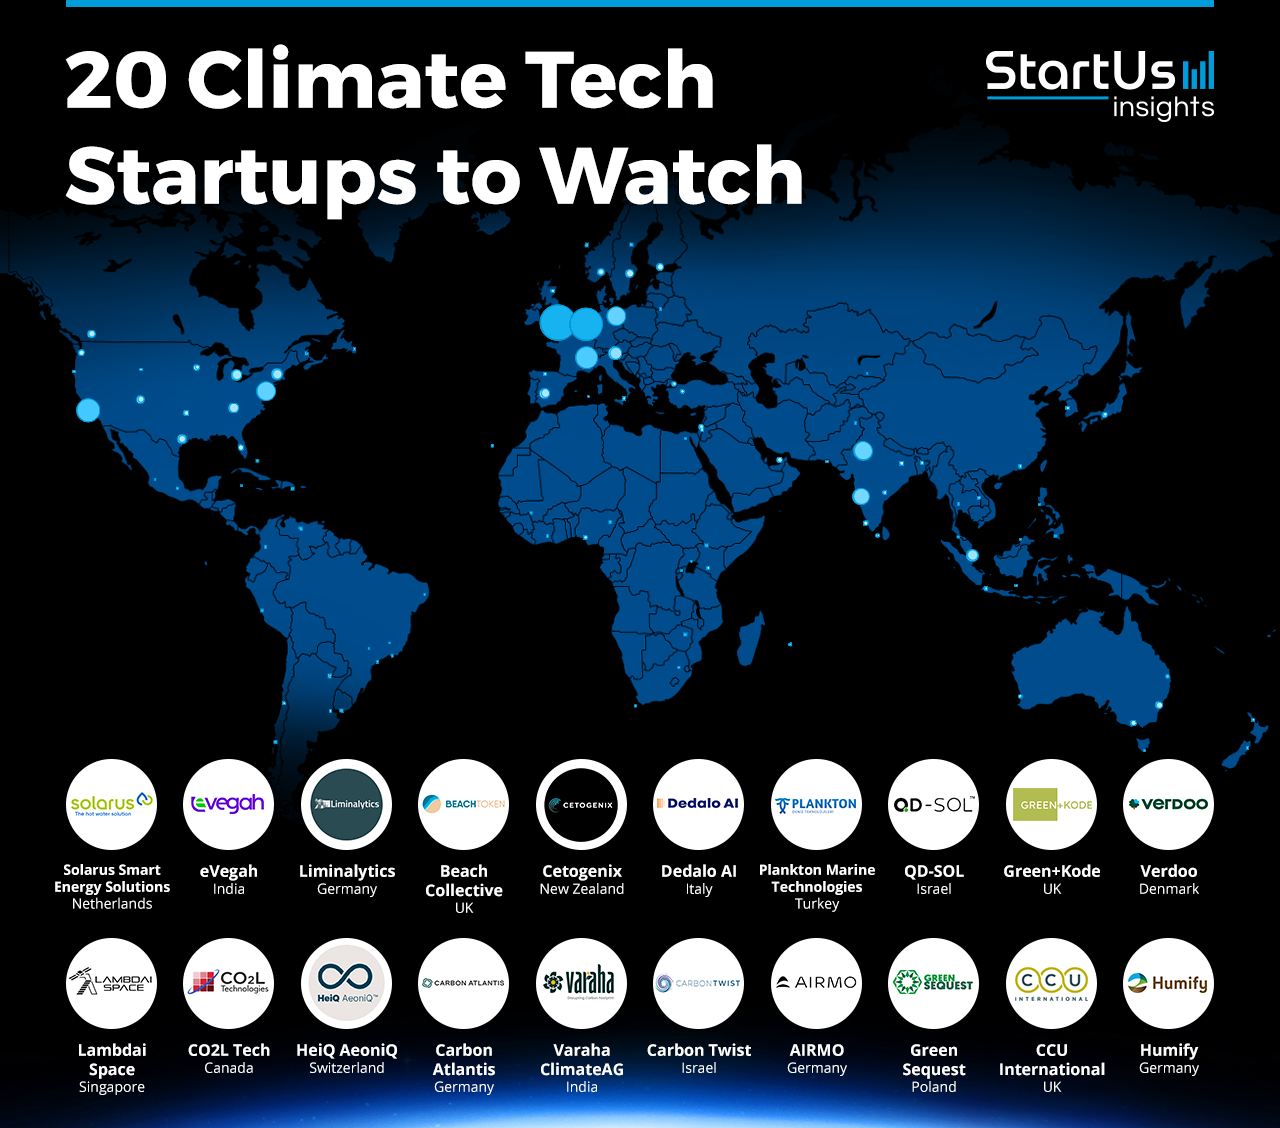 Green Sequest jednym z „20 startupów Climate Tech, które należy obserwować w 2024”